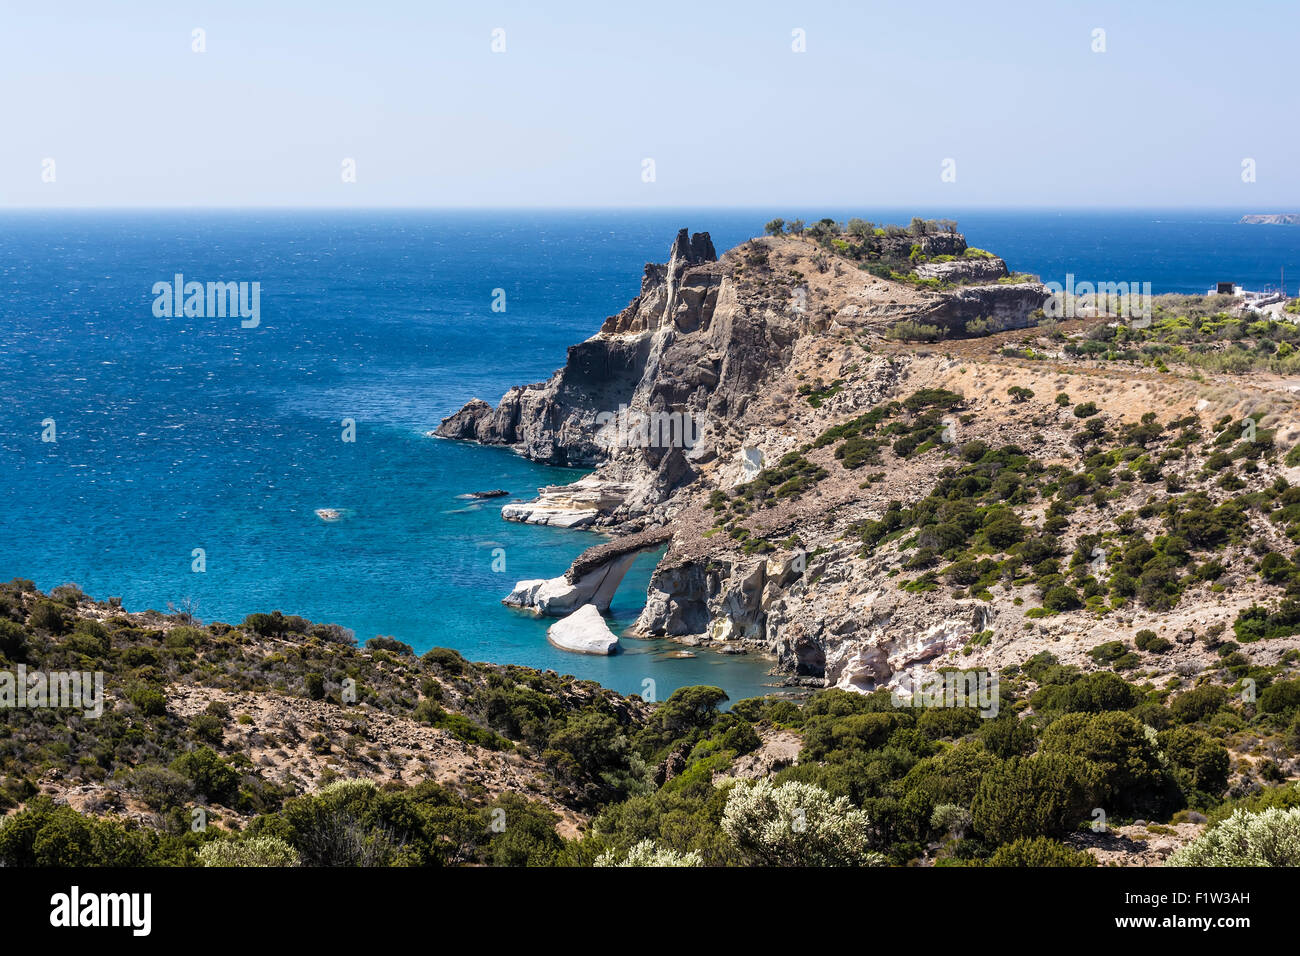 Panoramic view of Gerontas beach, Milos island, Cyclades, Greece Stock Photo